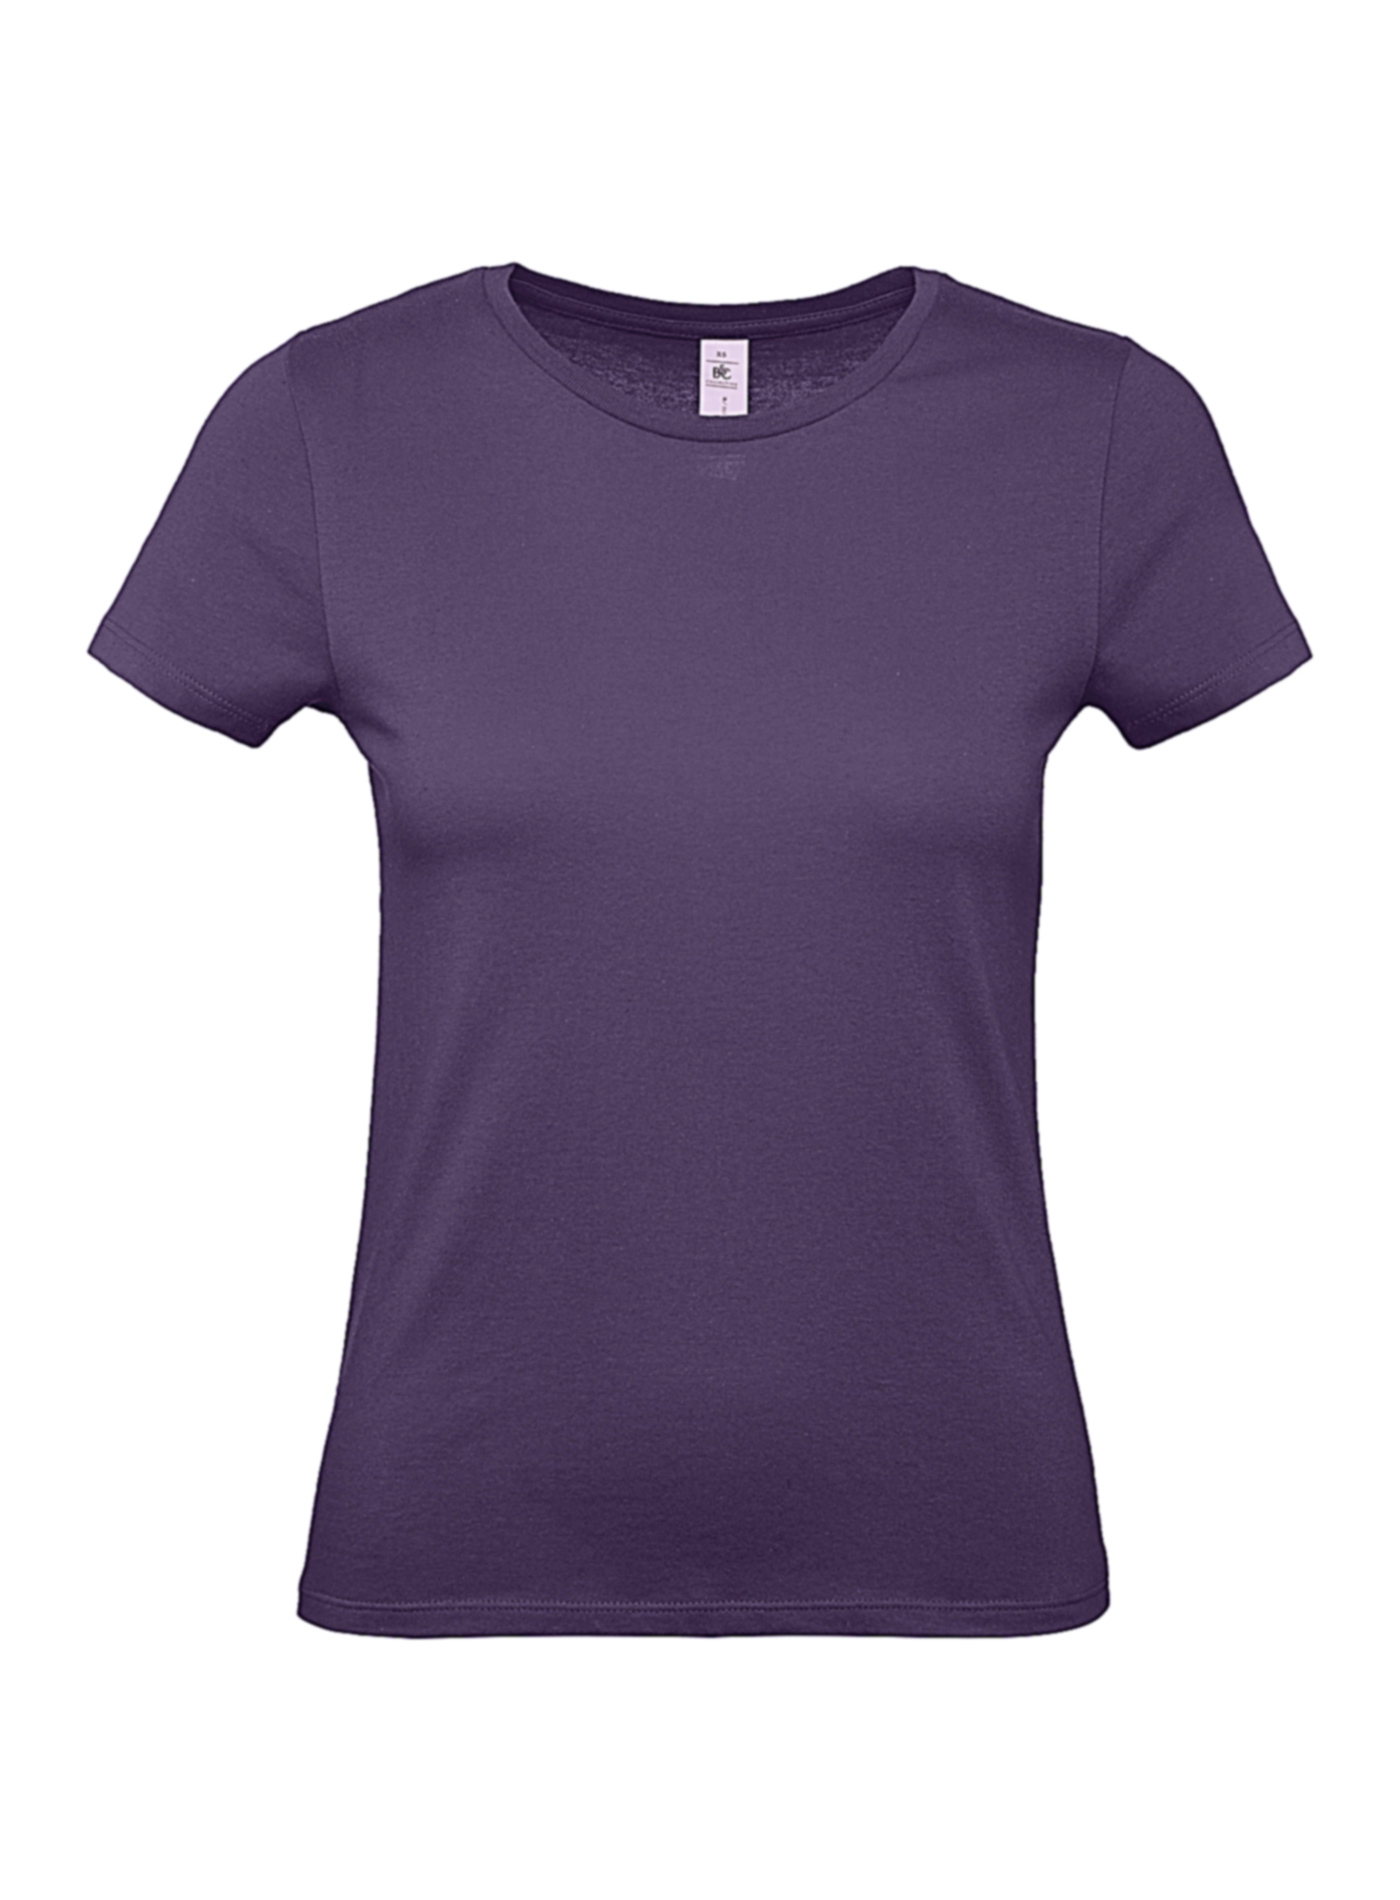 Dámské tričko B&C - Tmavě fialová XL